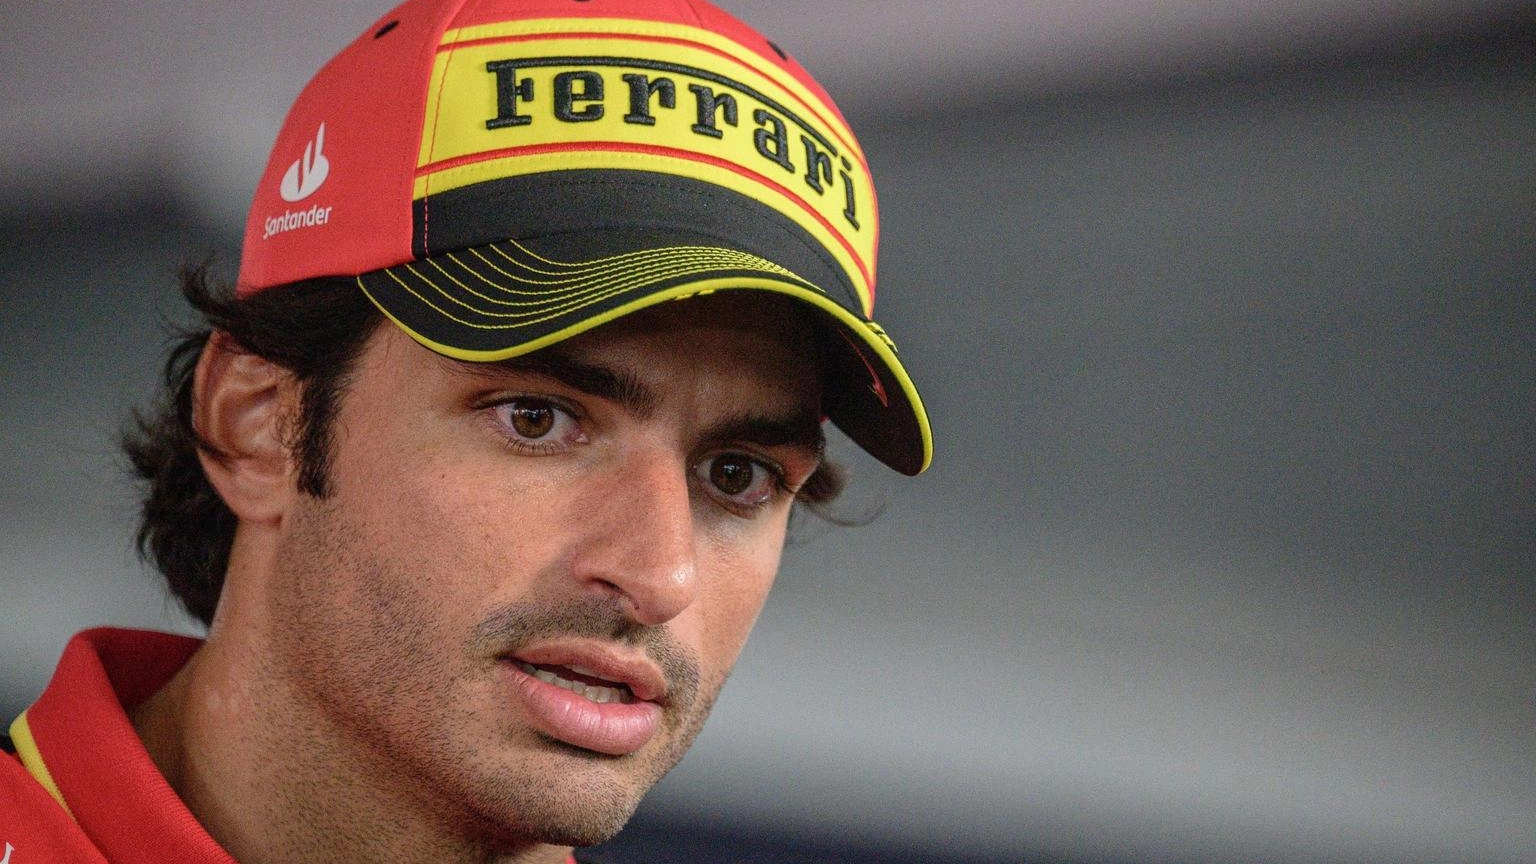 Sainz in pole con Ferrari a Monza, Verstappen secondo" (90 characters)"